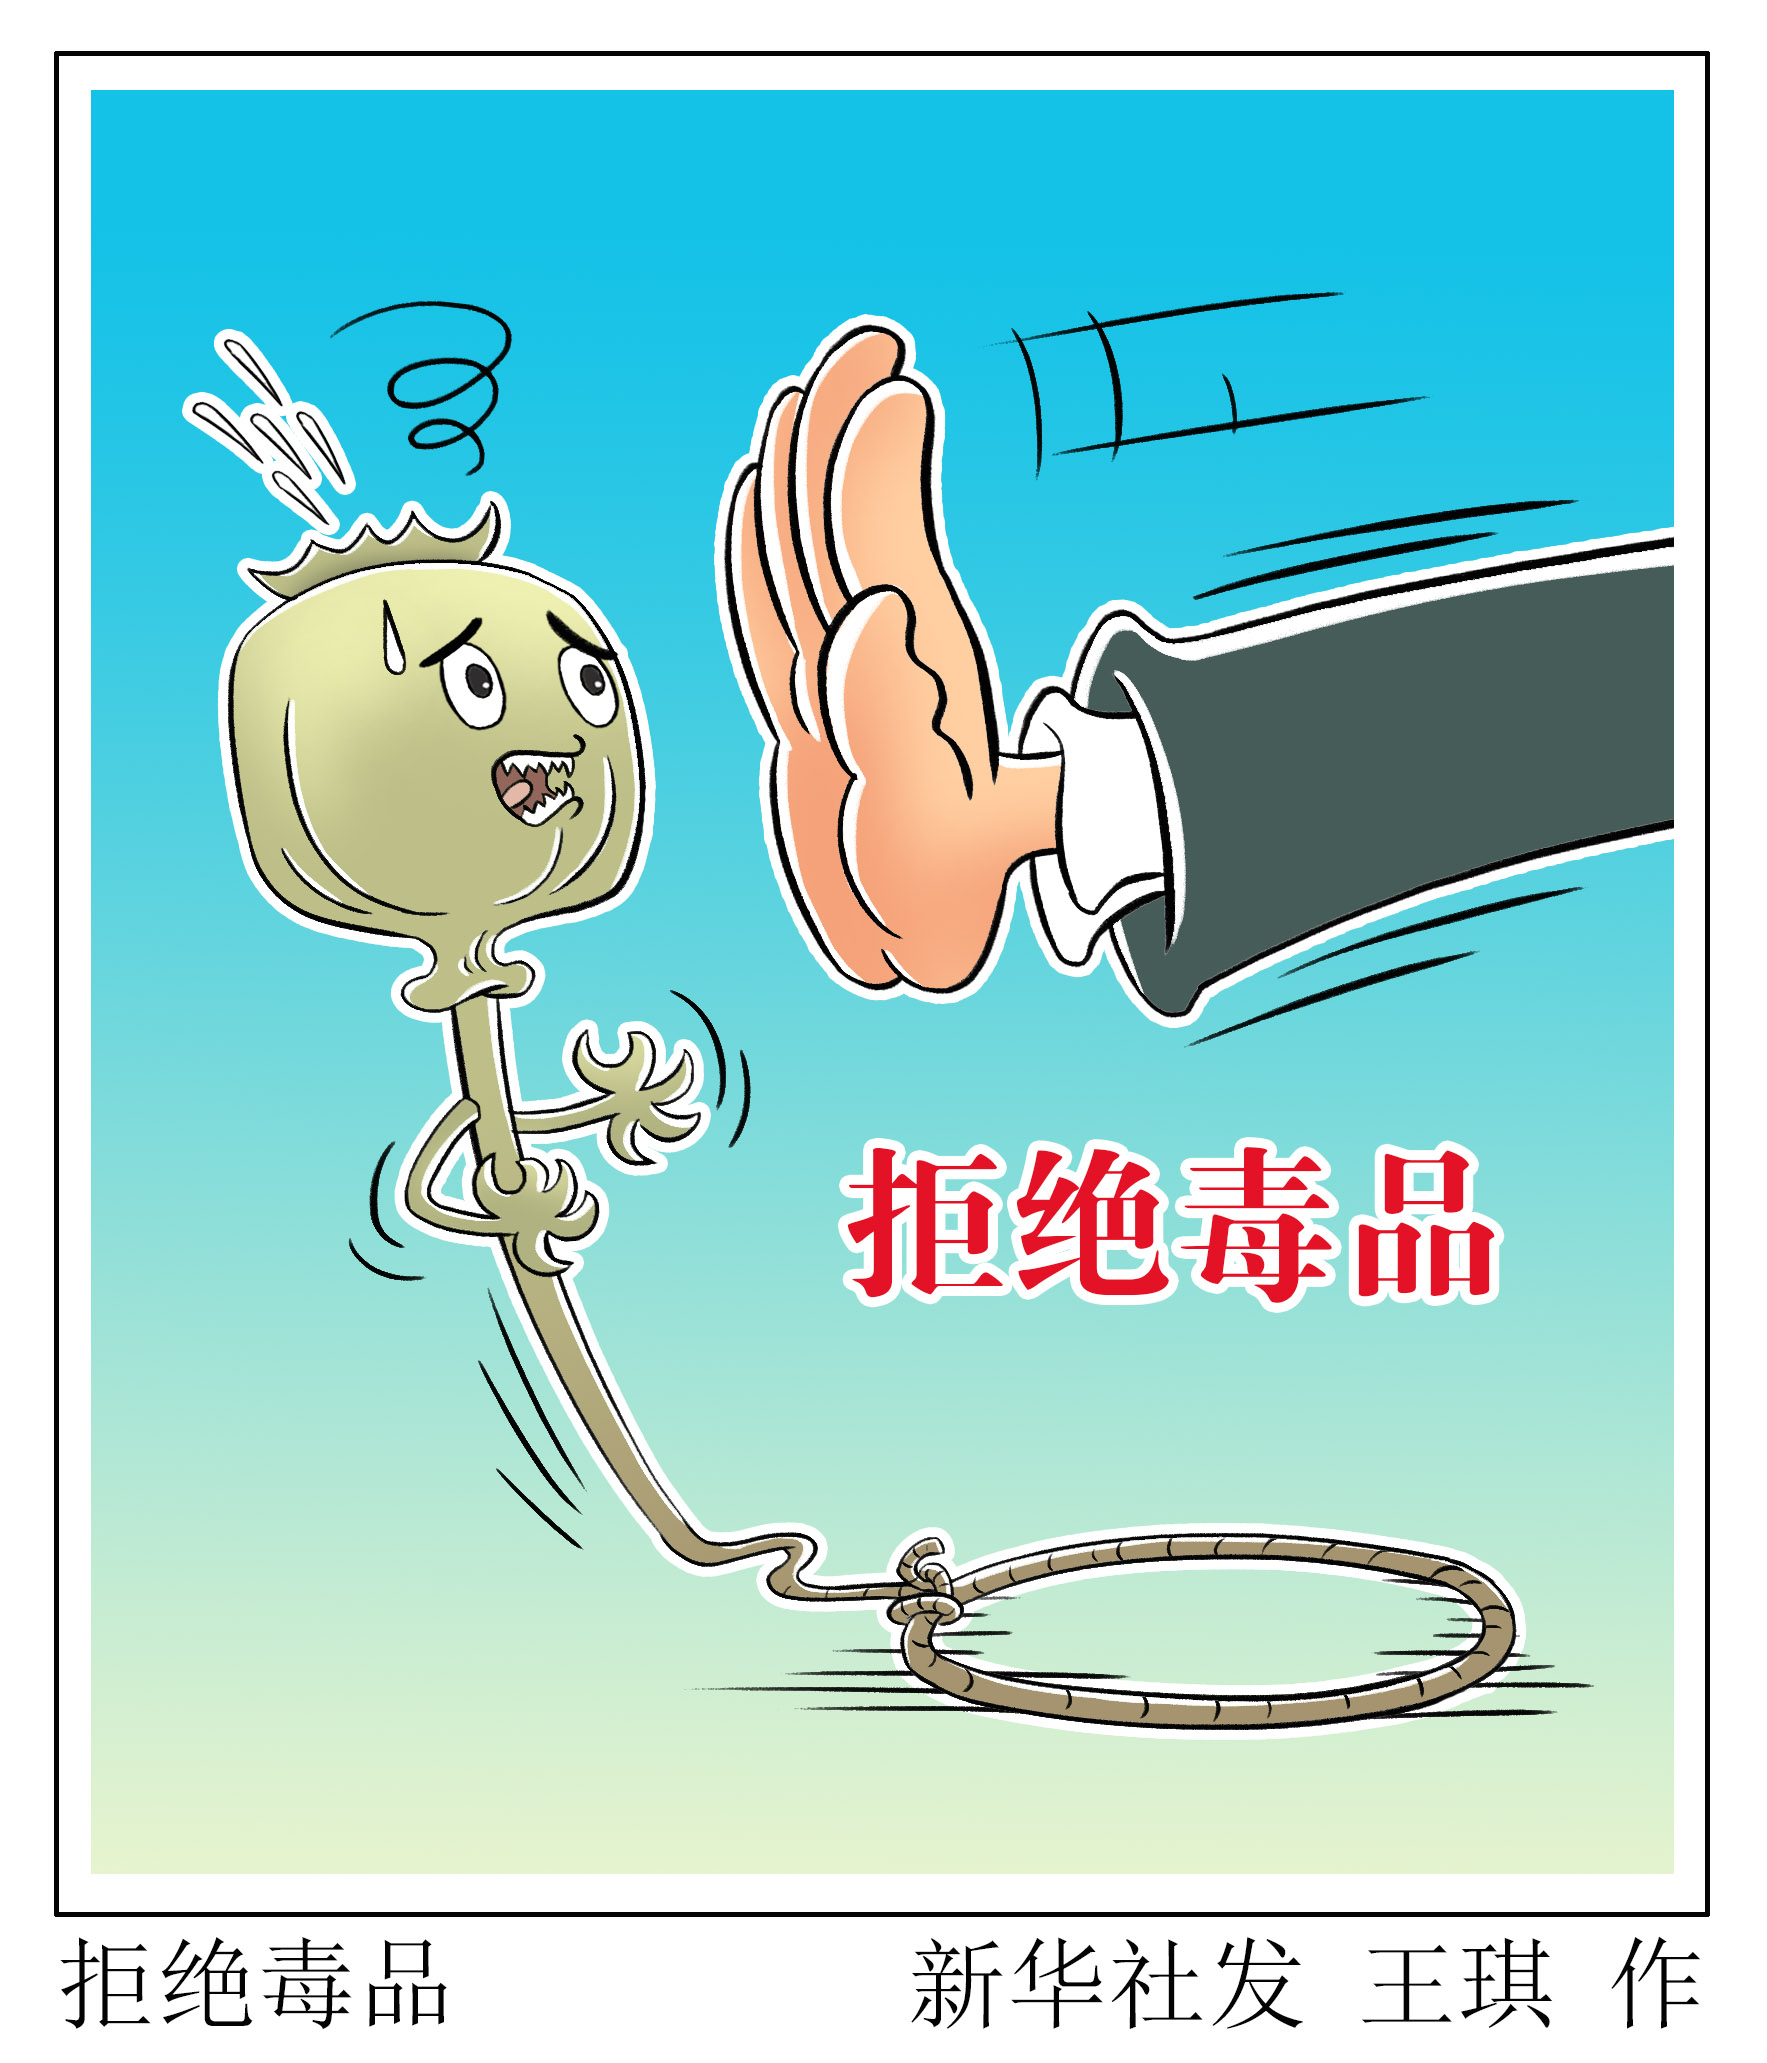 新华社图表,北京,2021年6月25日 漫画:拒绝毒品 新华社发 王琪 作